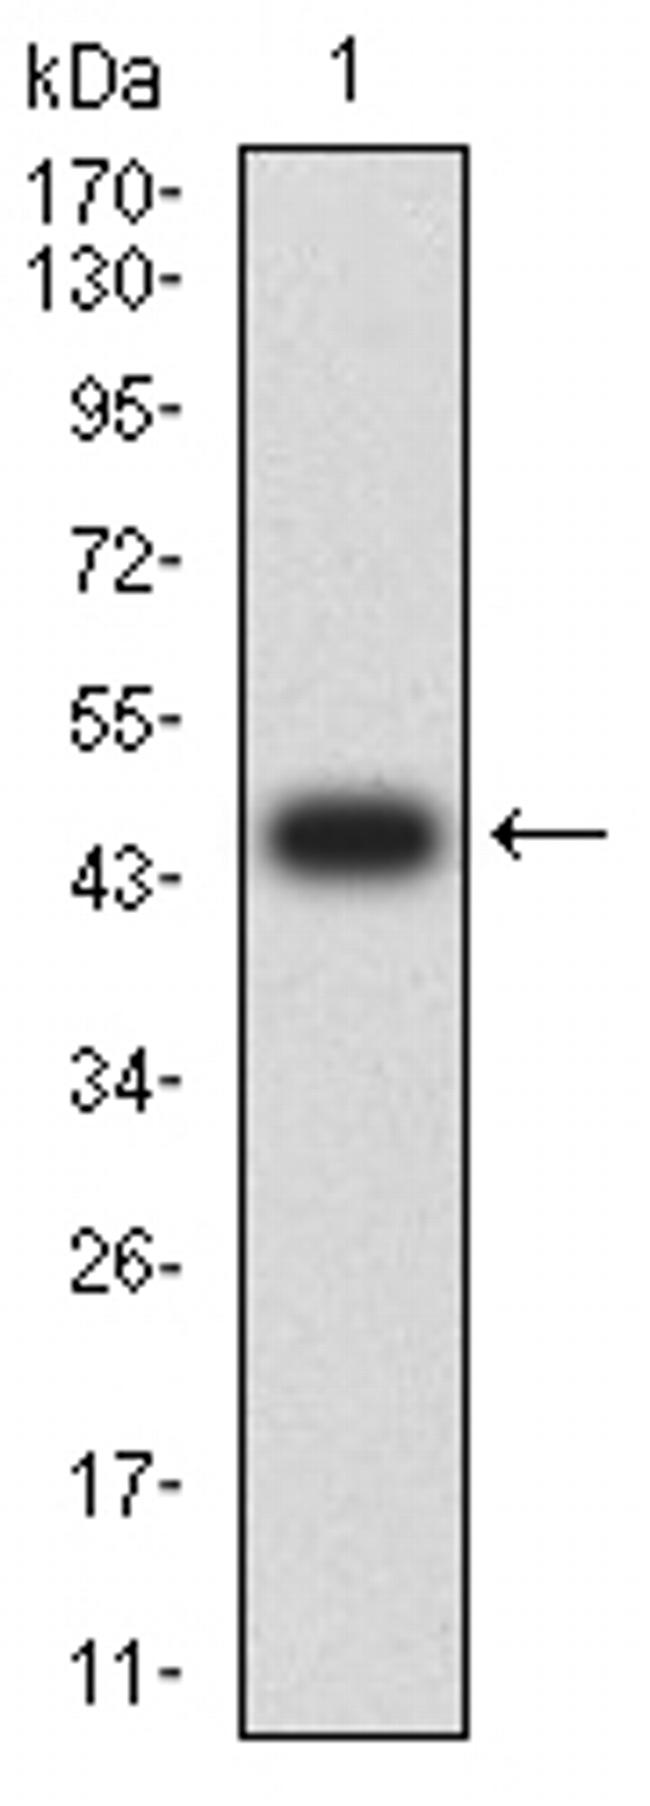 IL18R1 Antibody in Western Blot (WB)